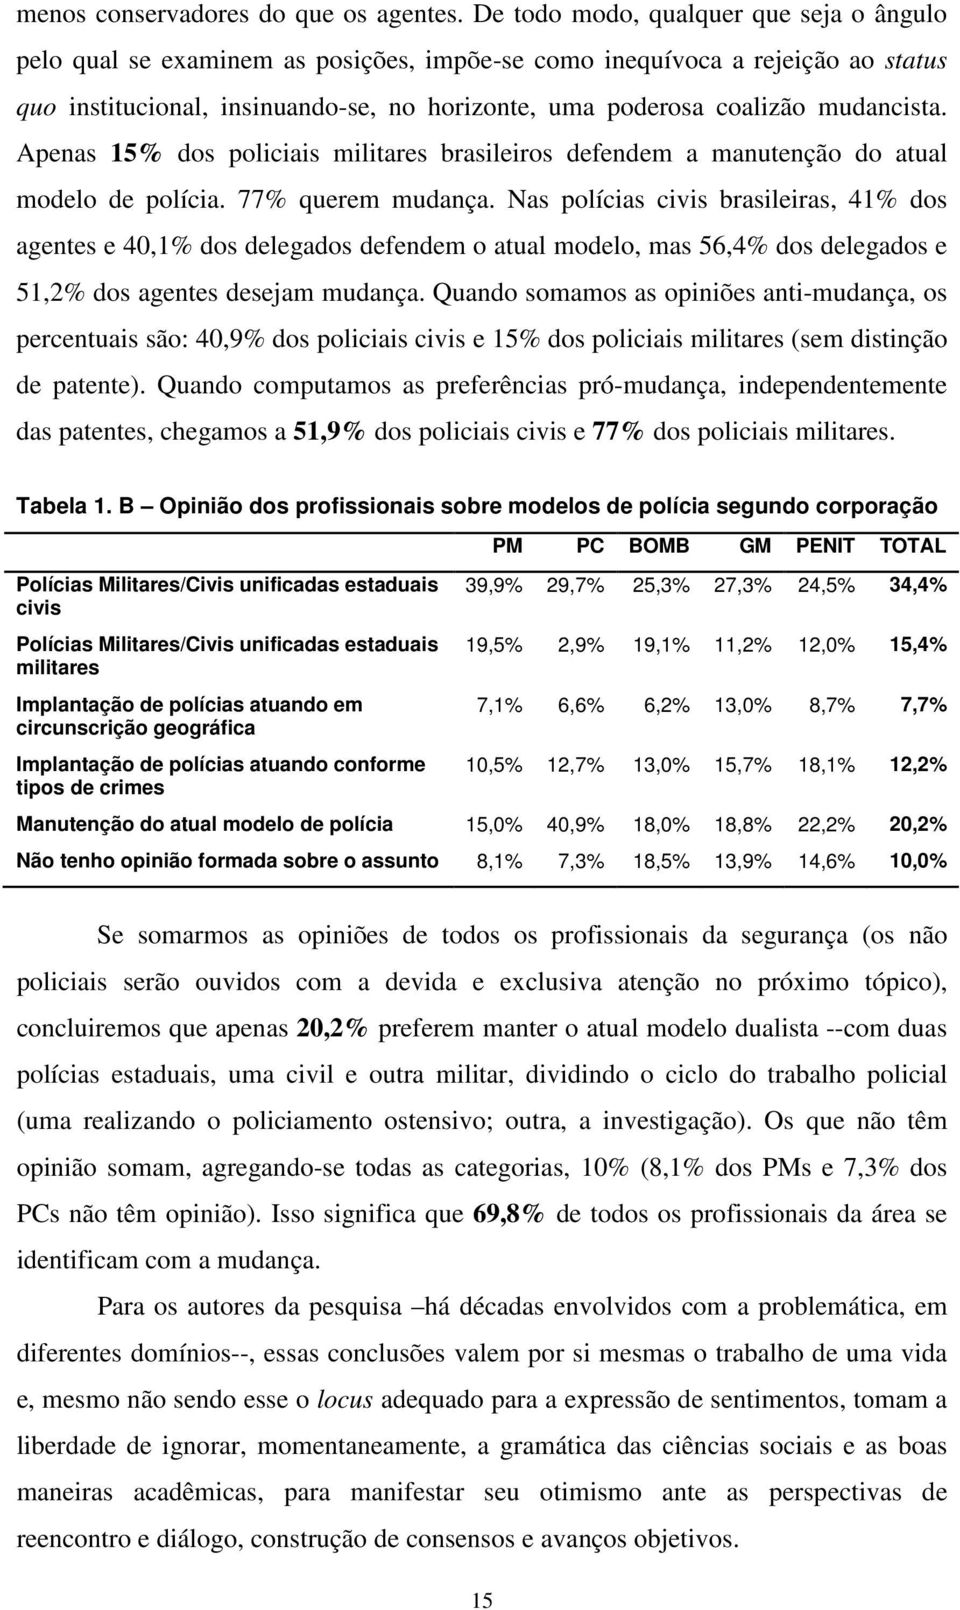 mudancista. Apenas 15% dos policiais militares brasileiros defendem a manutenção do atual modelo de polícia. 77% querem mudança.